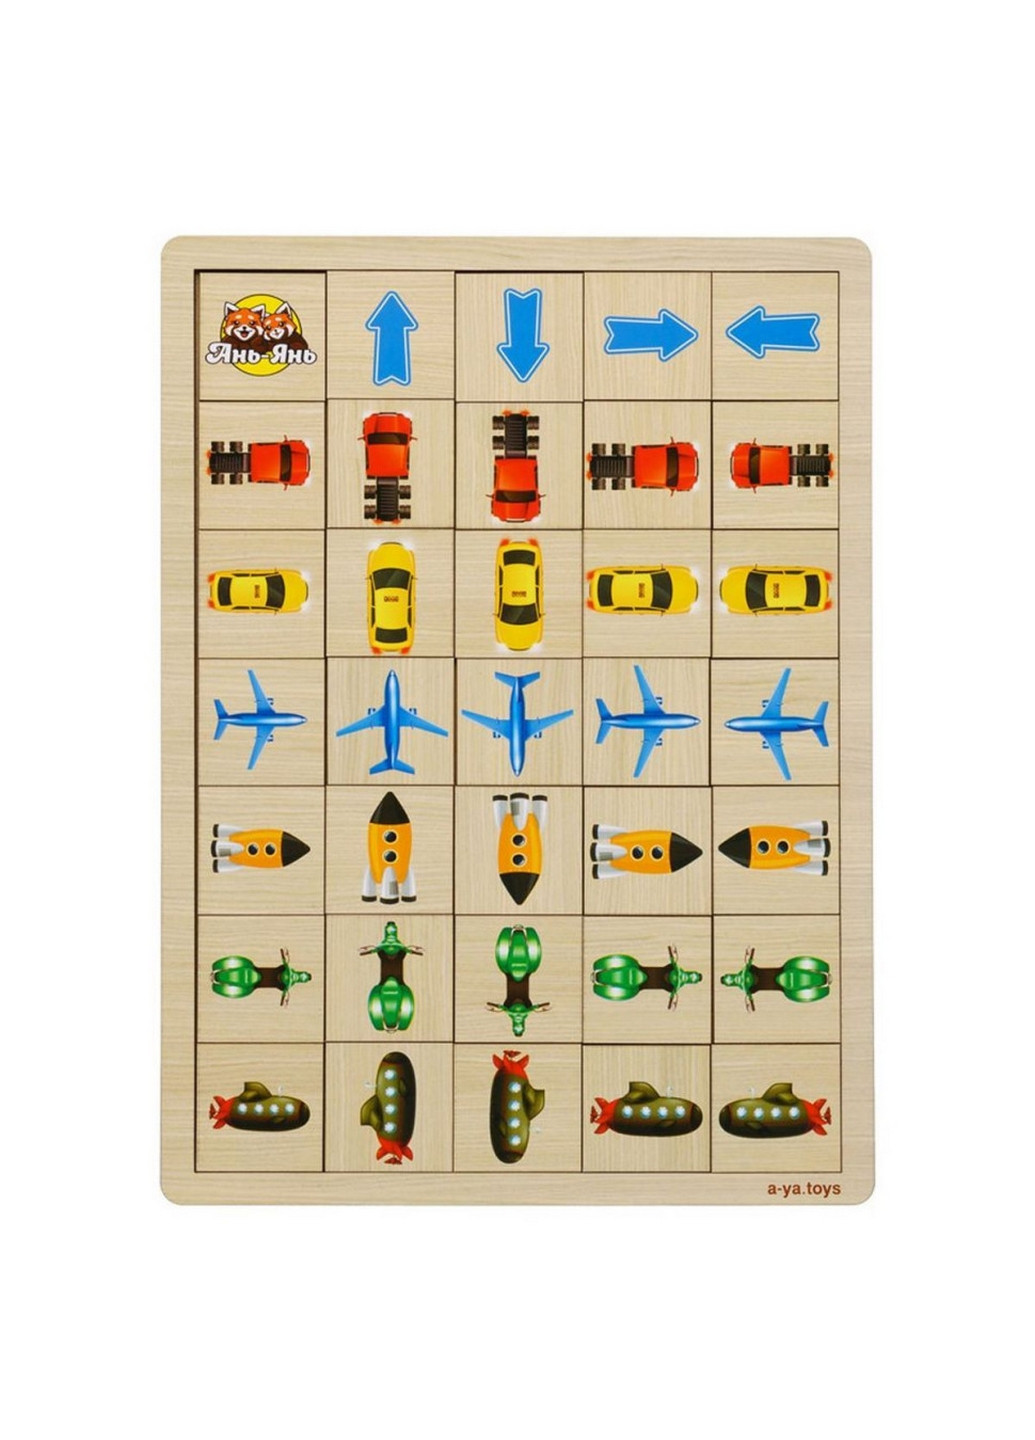 Деревянная настольная игра "Укажите направление - 1" пазл-сортер 1х33х24 см Ubumblebees (260531516)